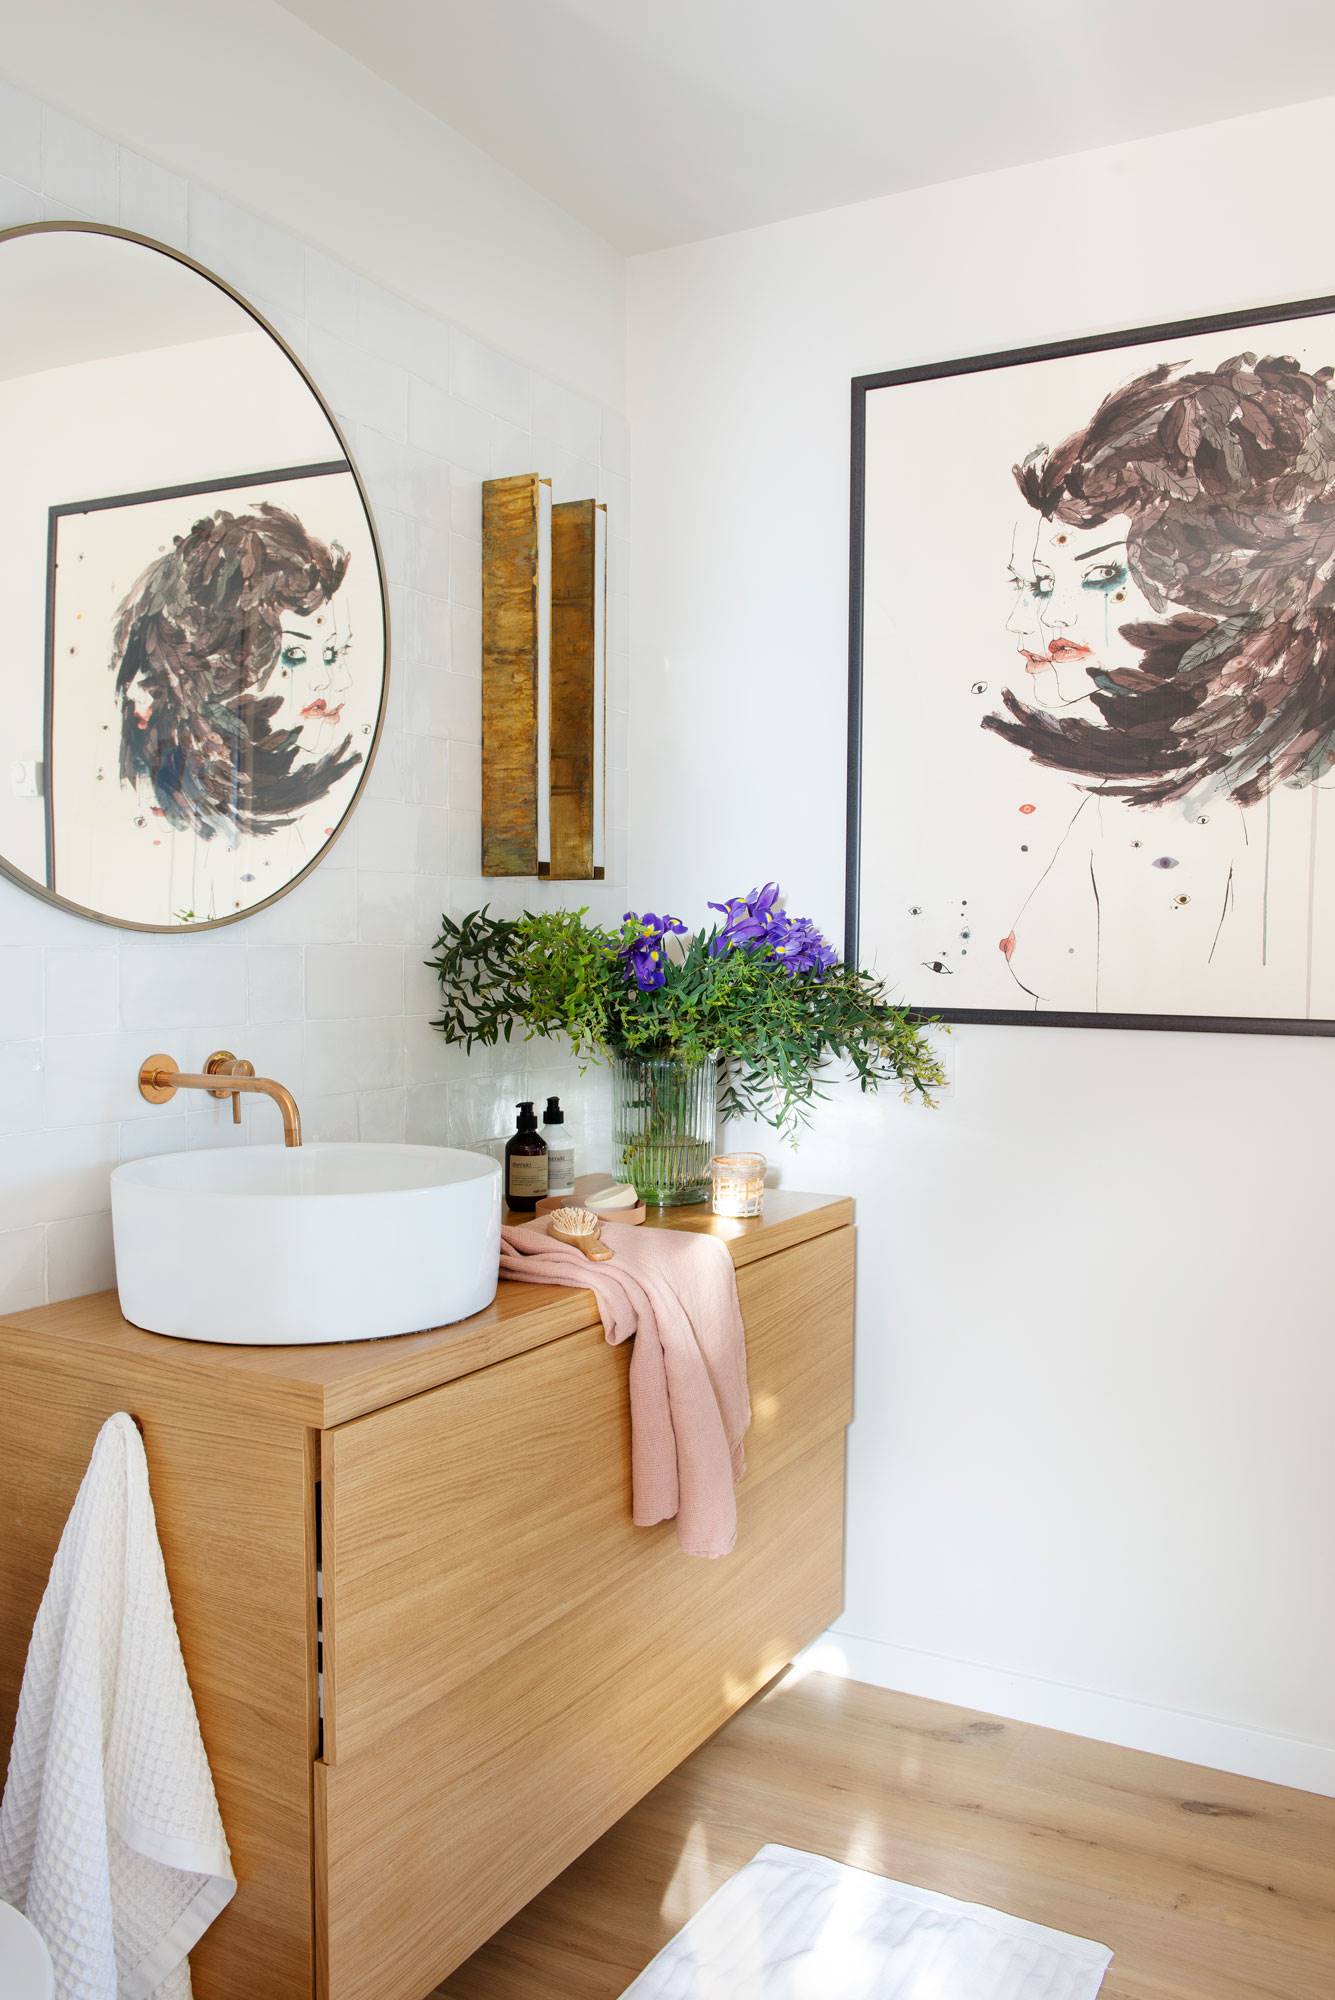 Baño con mueble de madera, espejo redondo y cuadro sobre la pared.